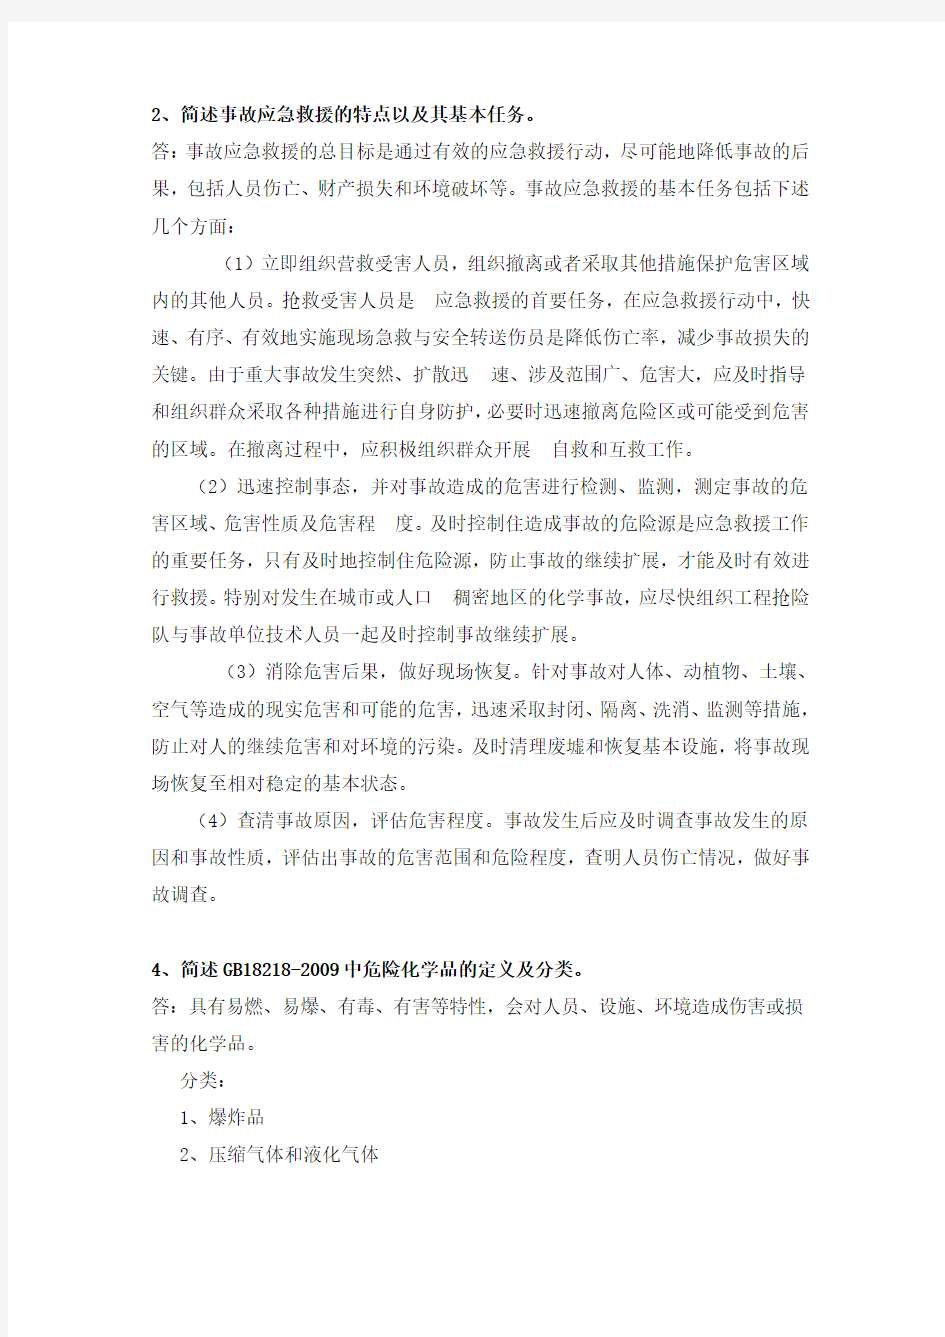 中国石油大学(北京)远程教育学院2015年秋季期末考试《 安全管理学 》参考答案(学号尾数为双号)